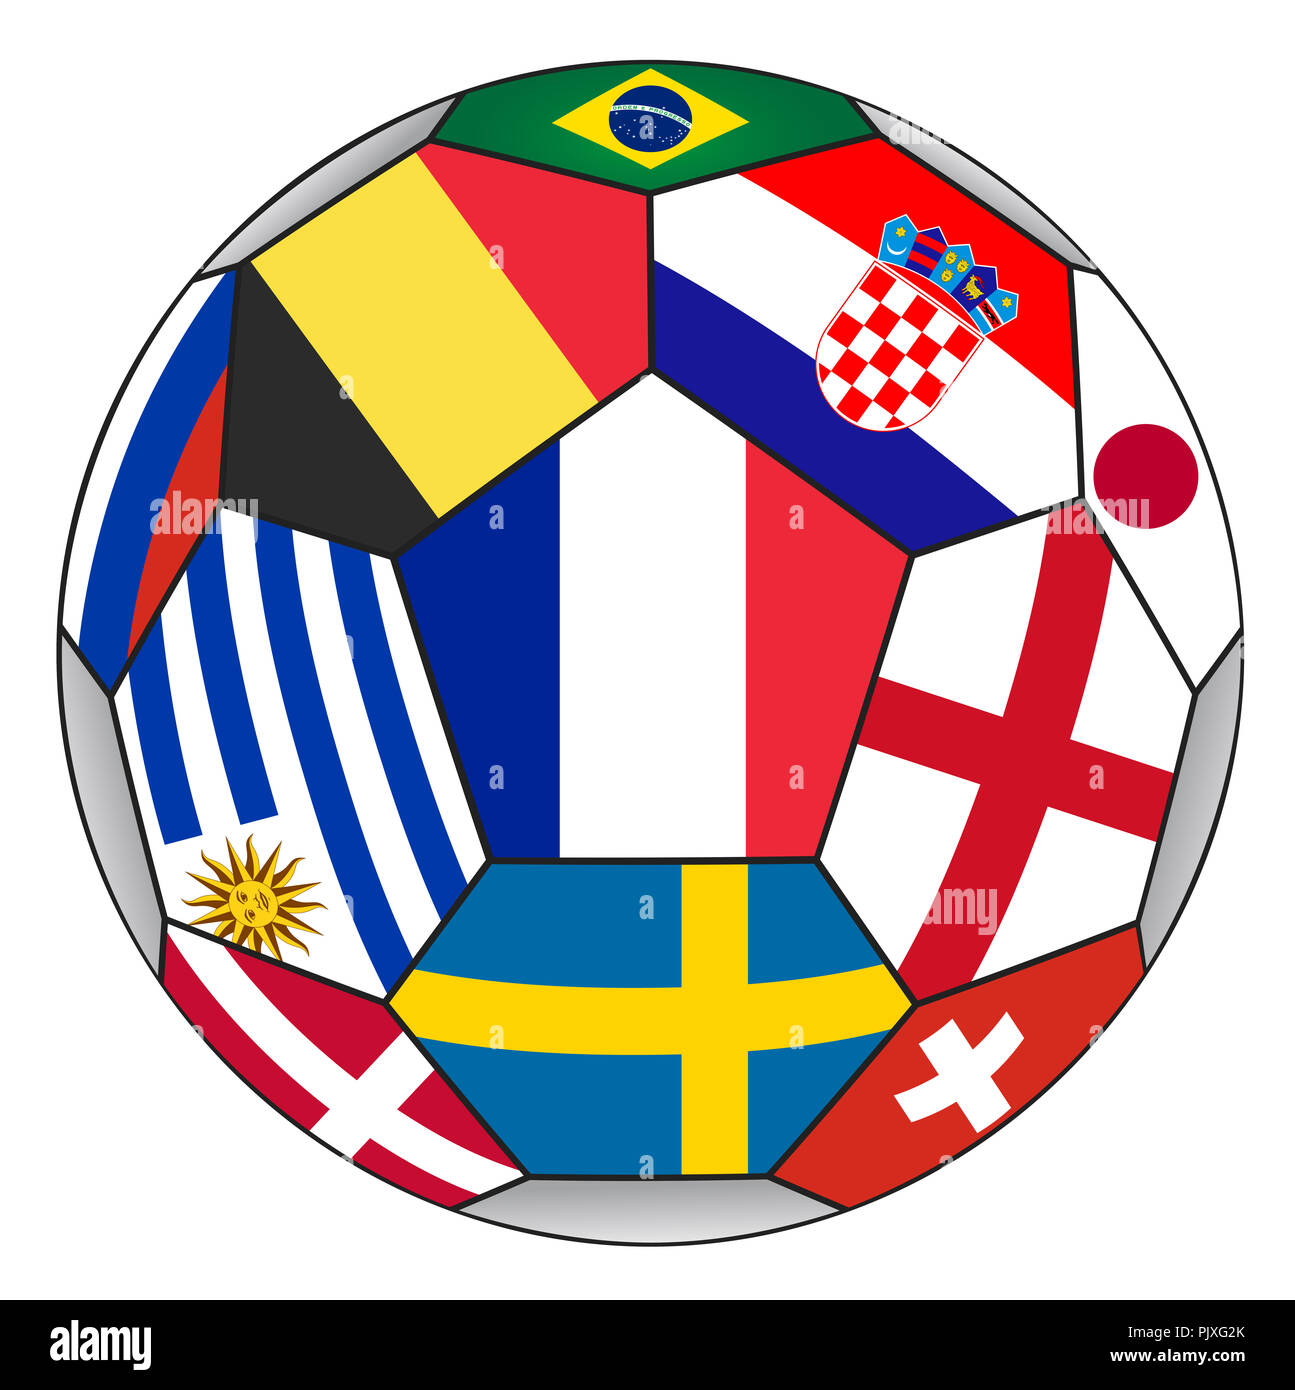 Pallone da calcio con vari flag isolato su sfondo bianco - campione del mondo Foto Stock